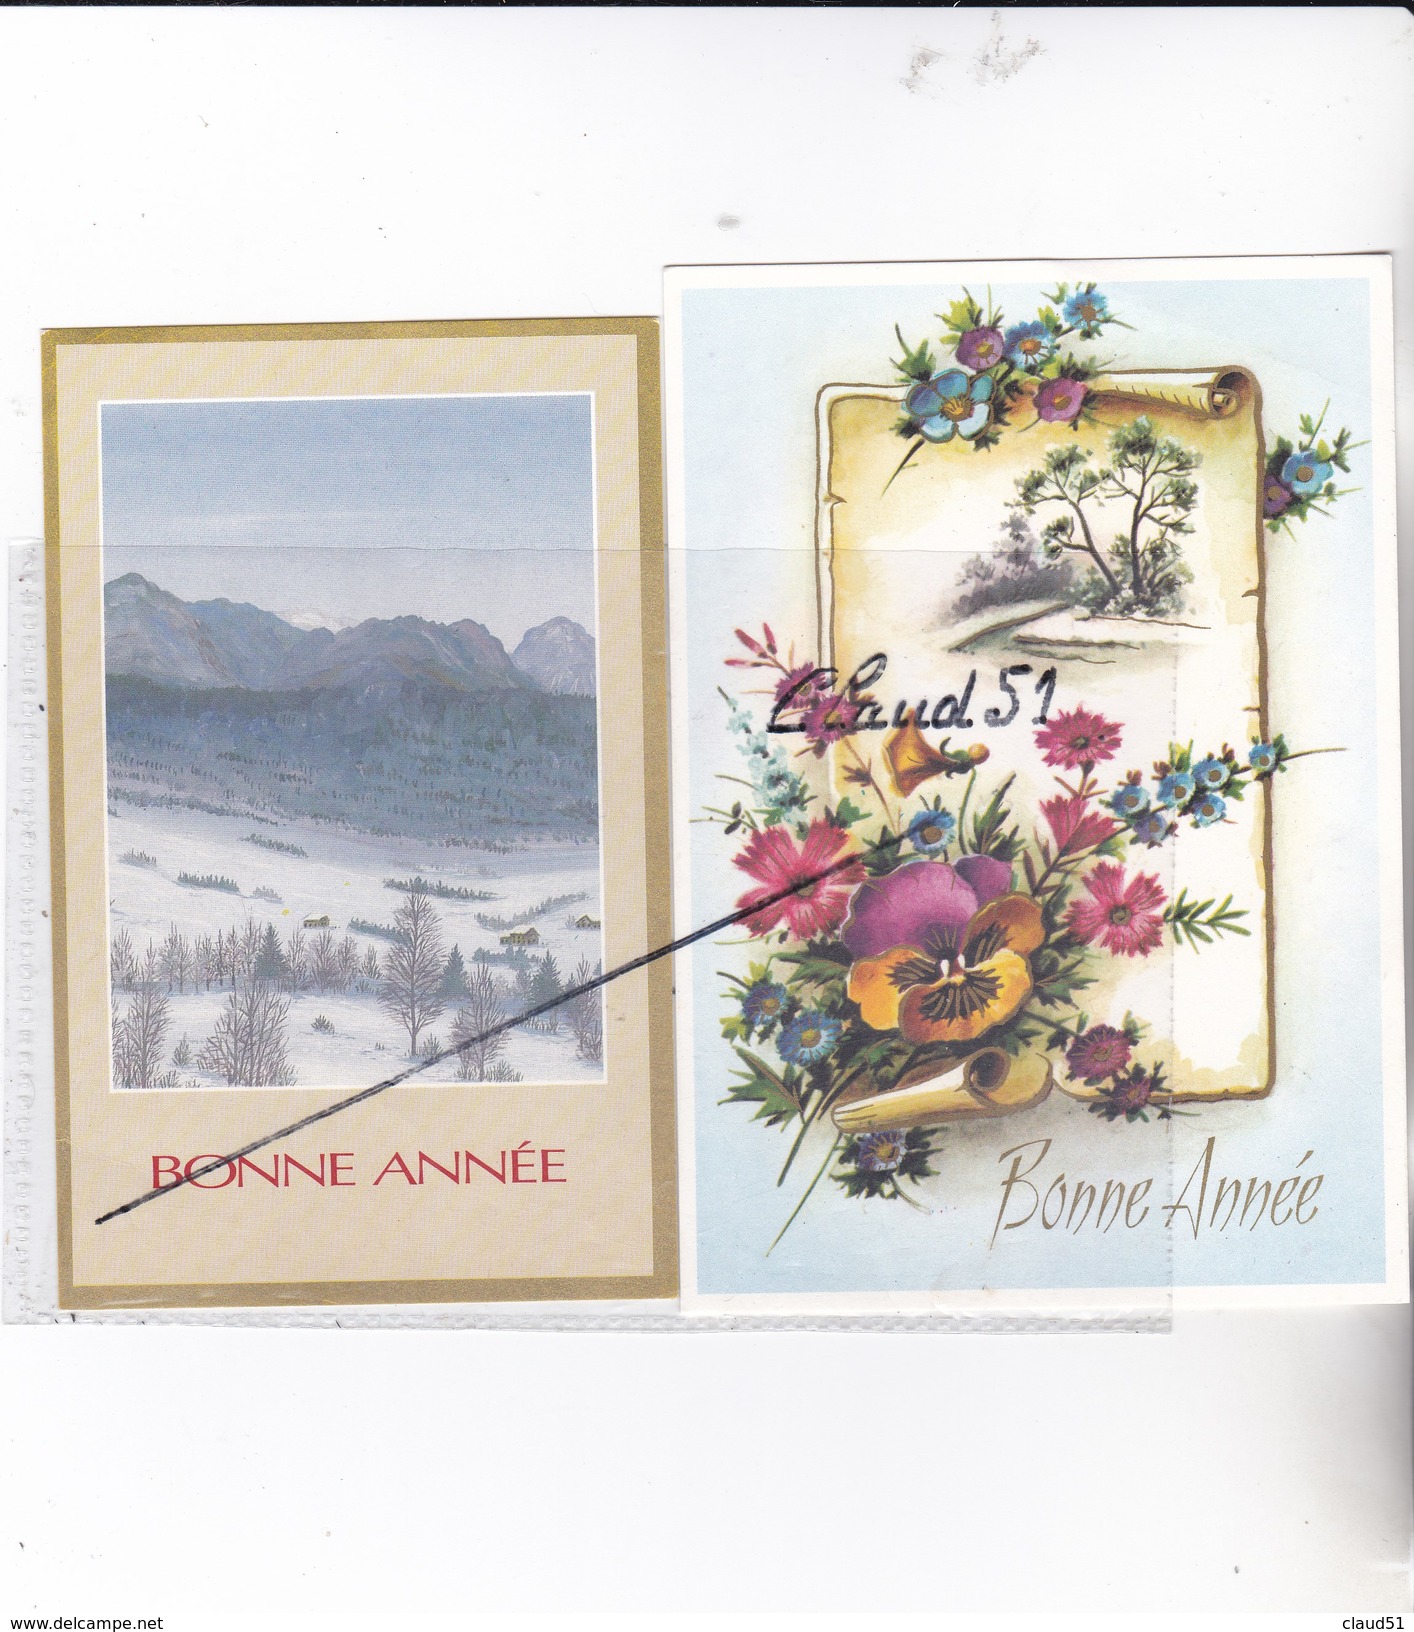 Lot de 20 cartes Bonne Année;Paysages,villages  sous la neige Fleurs,pont,étang,oiseaux,enfant,calèche....